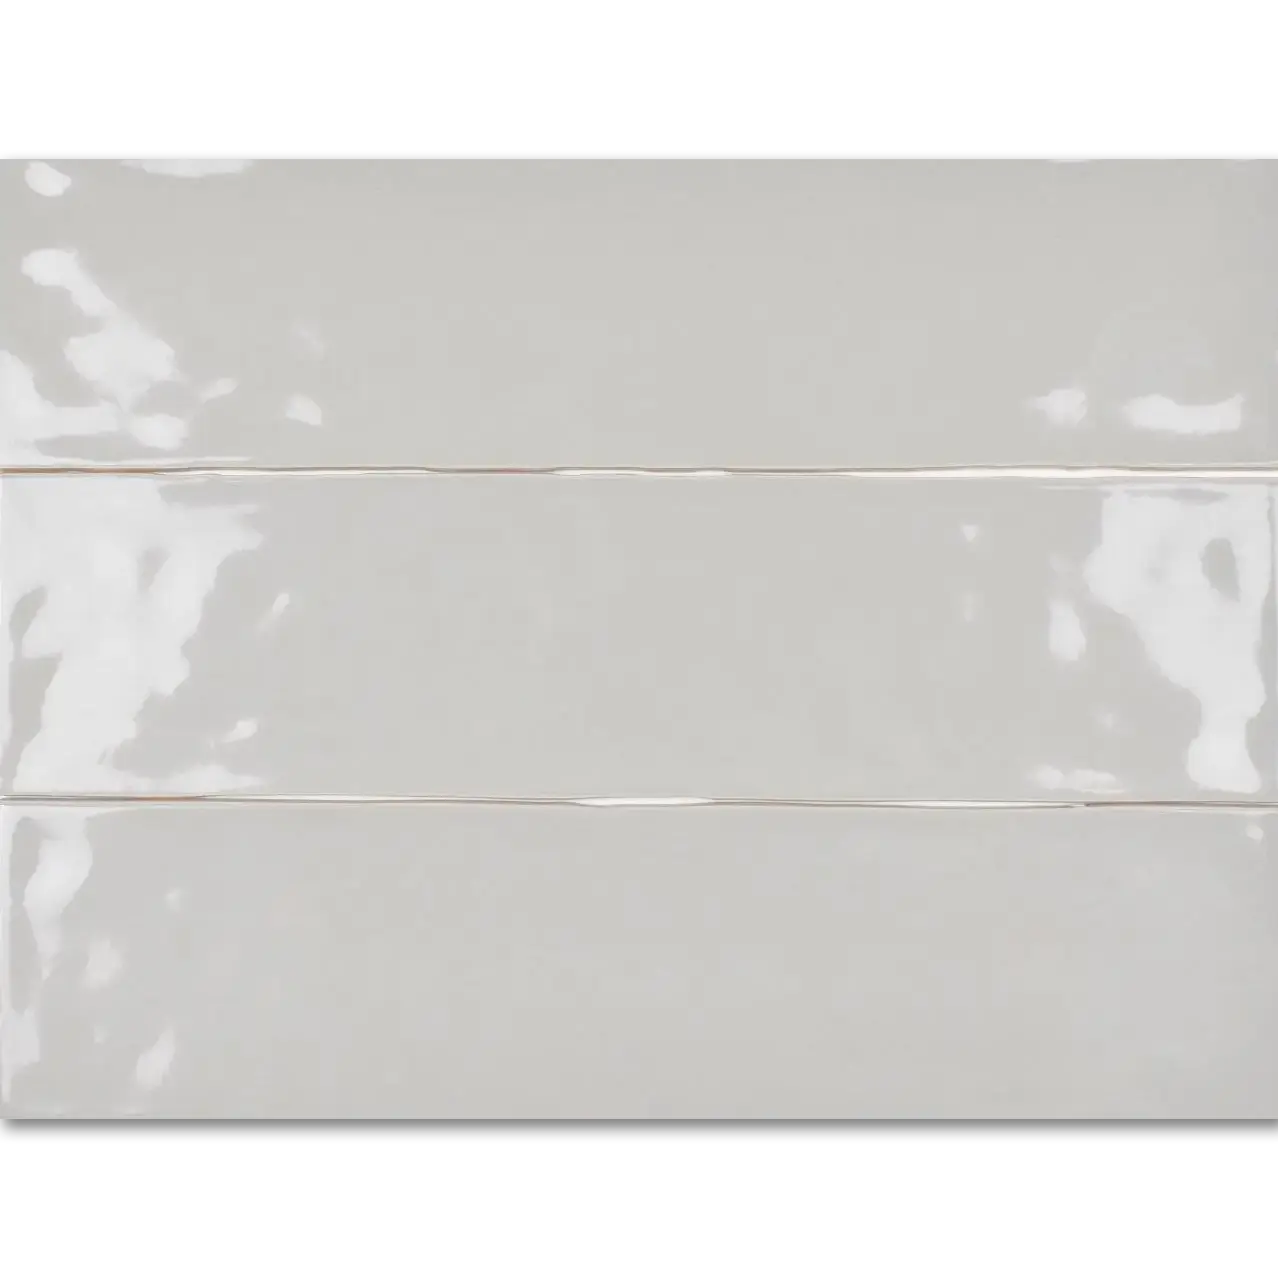 Artesano 3”x12” Ceramic Wall Tile Glazed Neu Grey